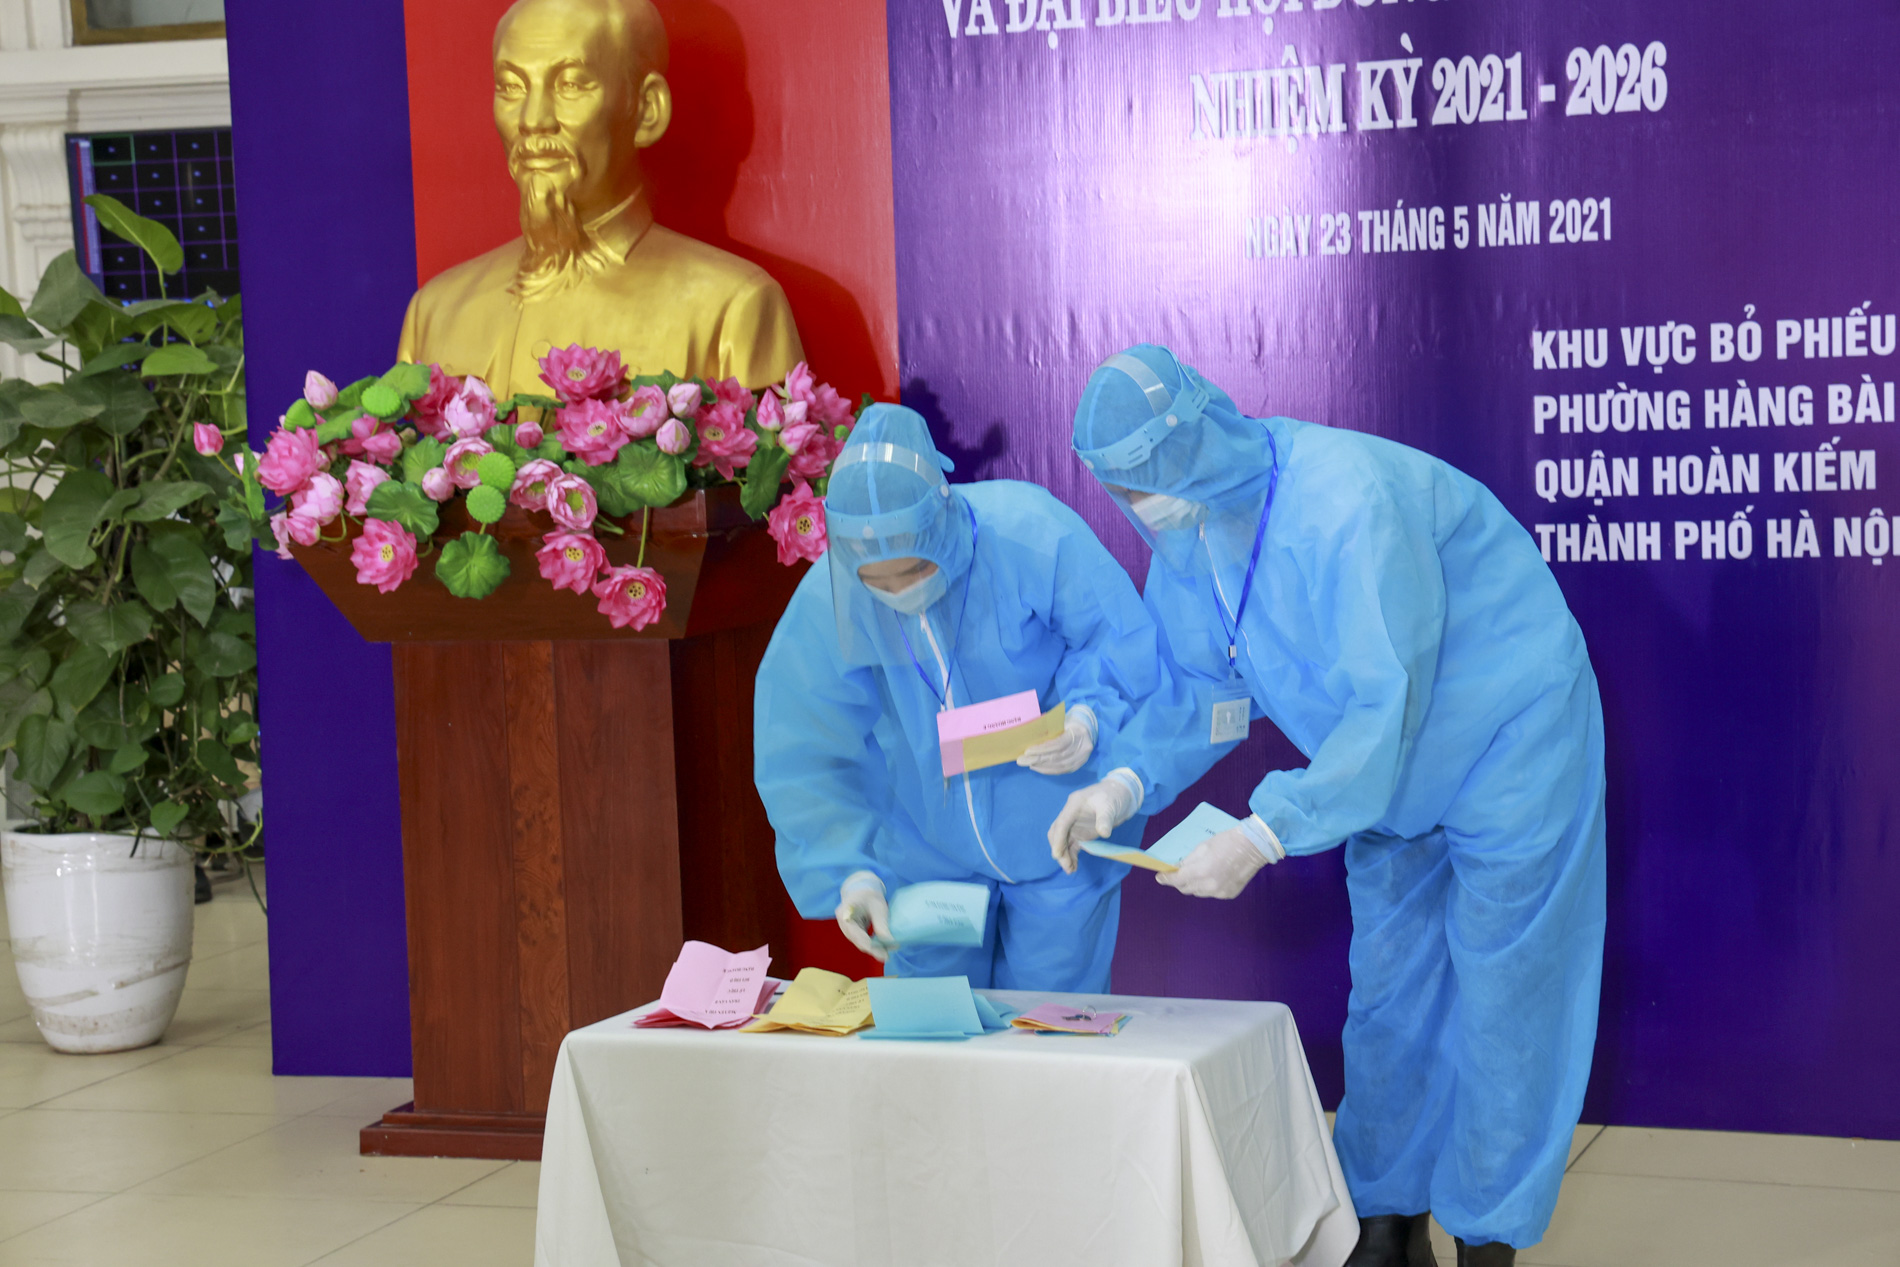 Quận Hoàn Kiếm diễn tập phương án phòng chống dịch COVID-19 phục vụ bầu cử - Ảnh 7.